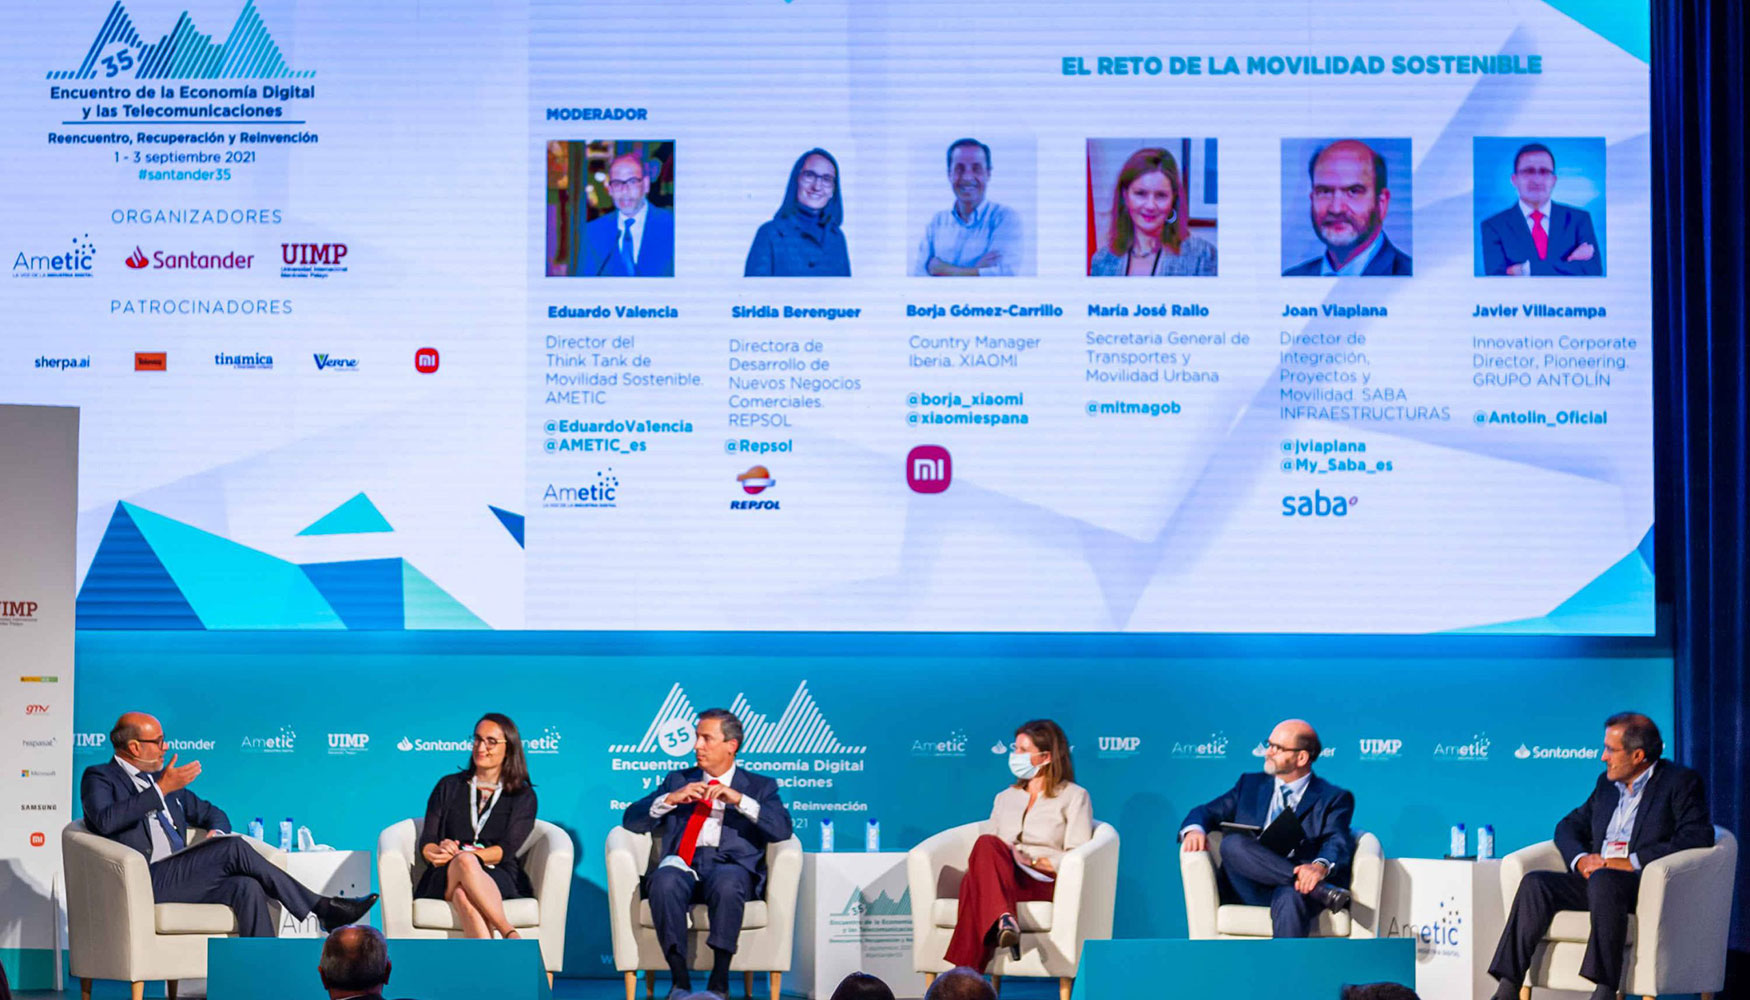 Uno de los debates de la primera jornada del evento de Santander abord los retos de la movilidad sostenible